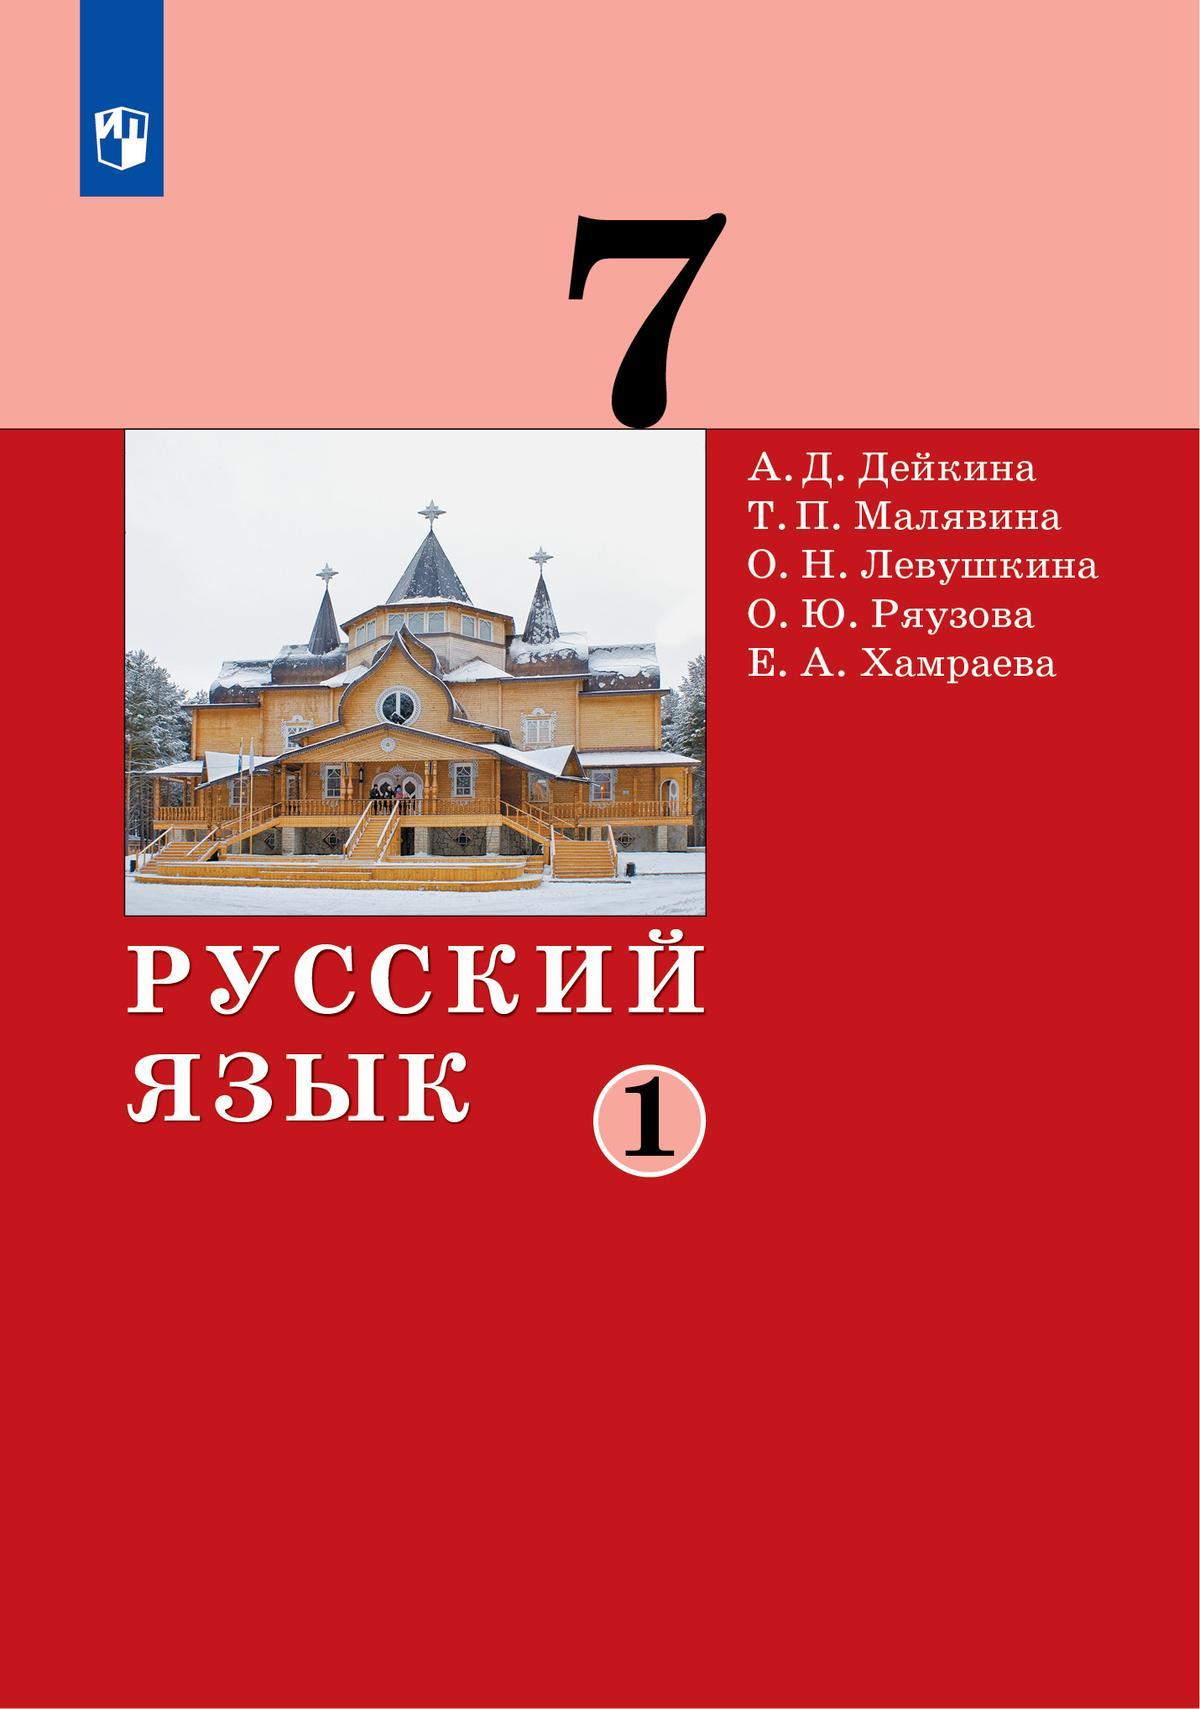 Русский язык. 7 класс. Электронная форма учебника. В 2 частях. Часть 1 1